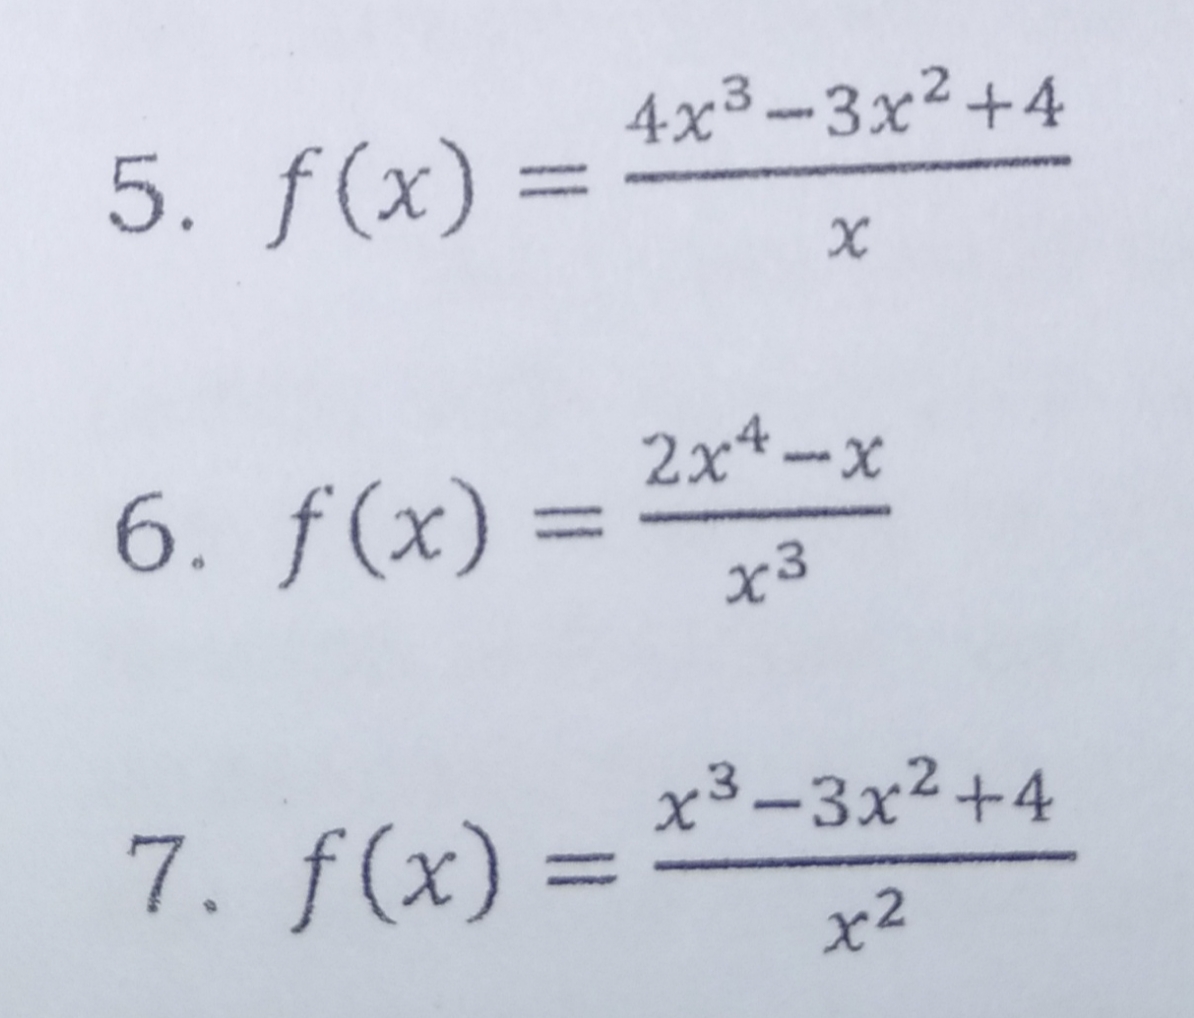 4x3-3x2+4
5. f(x) =
|3|
2x4-x
6. f(x) = 2*-*
x3
x³-3x²+4
7. f(x) =
%3D
x2
